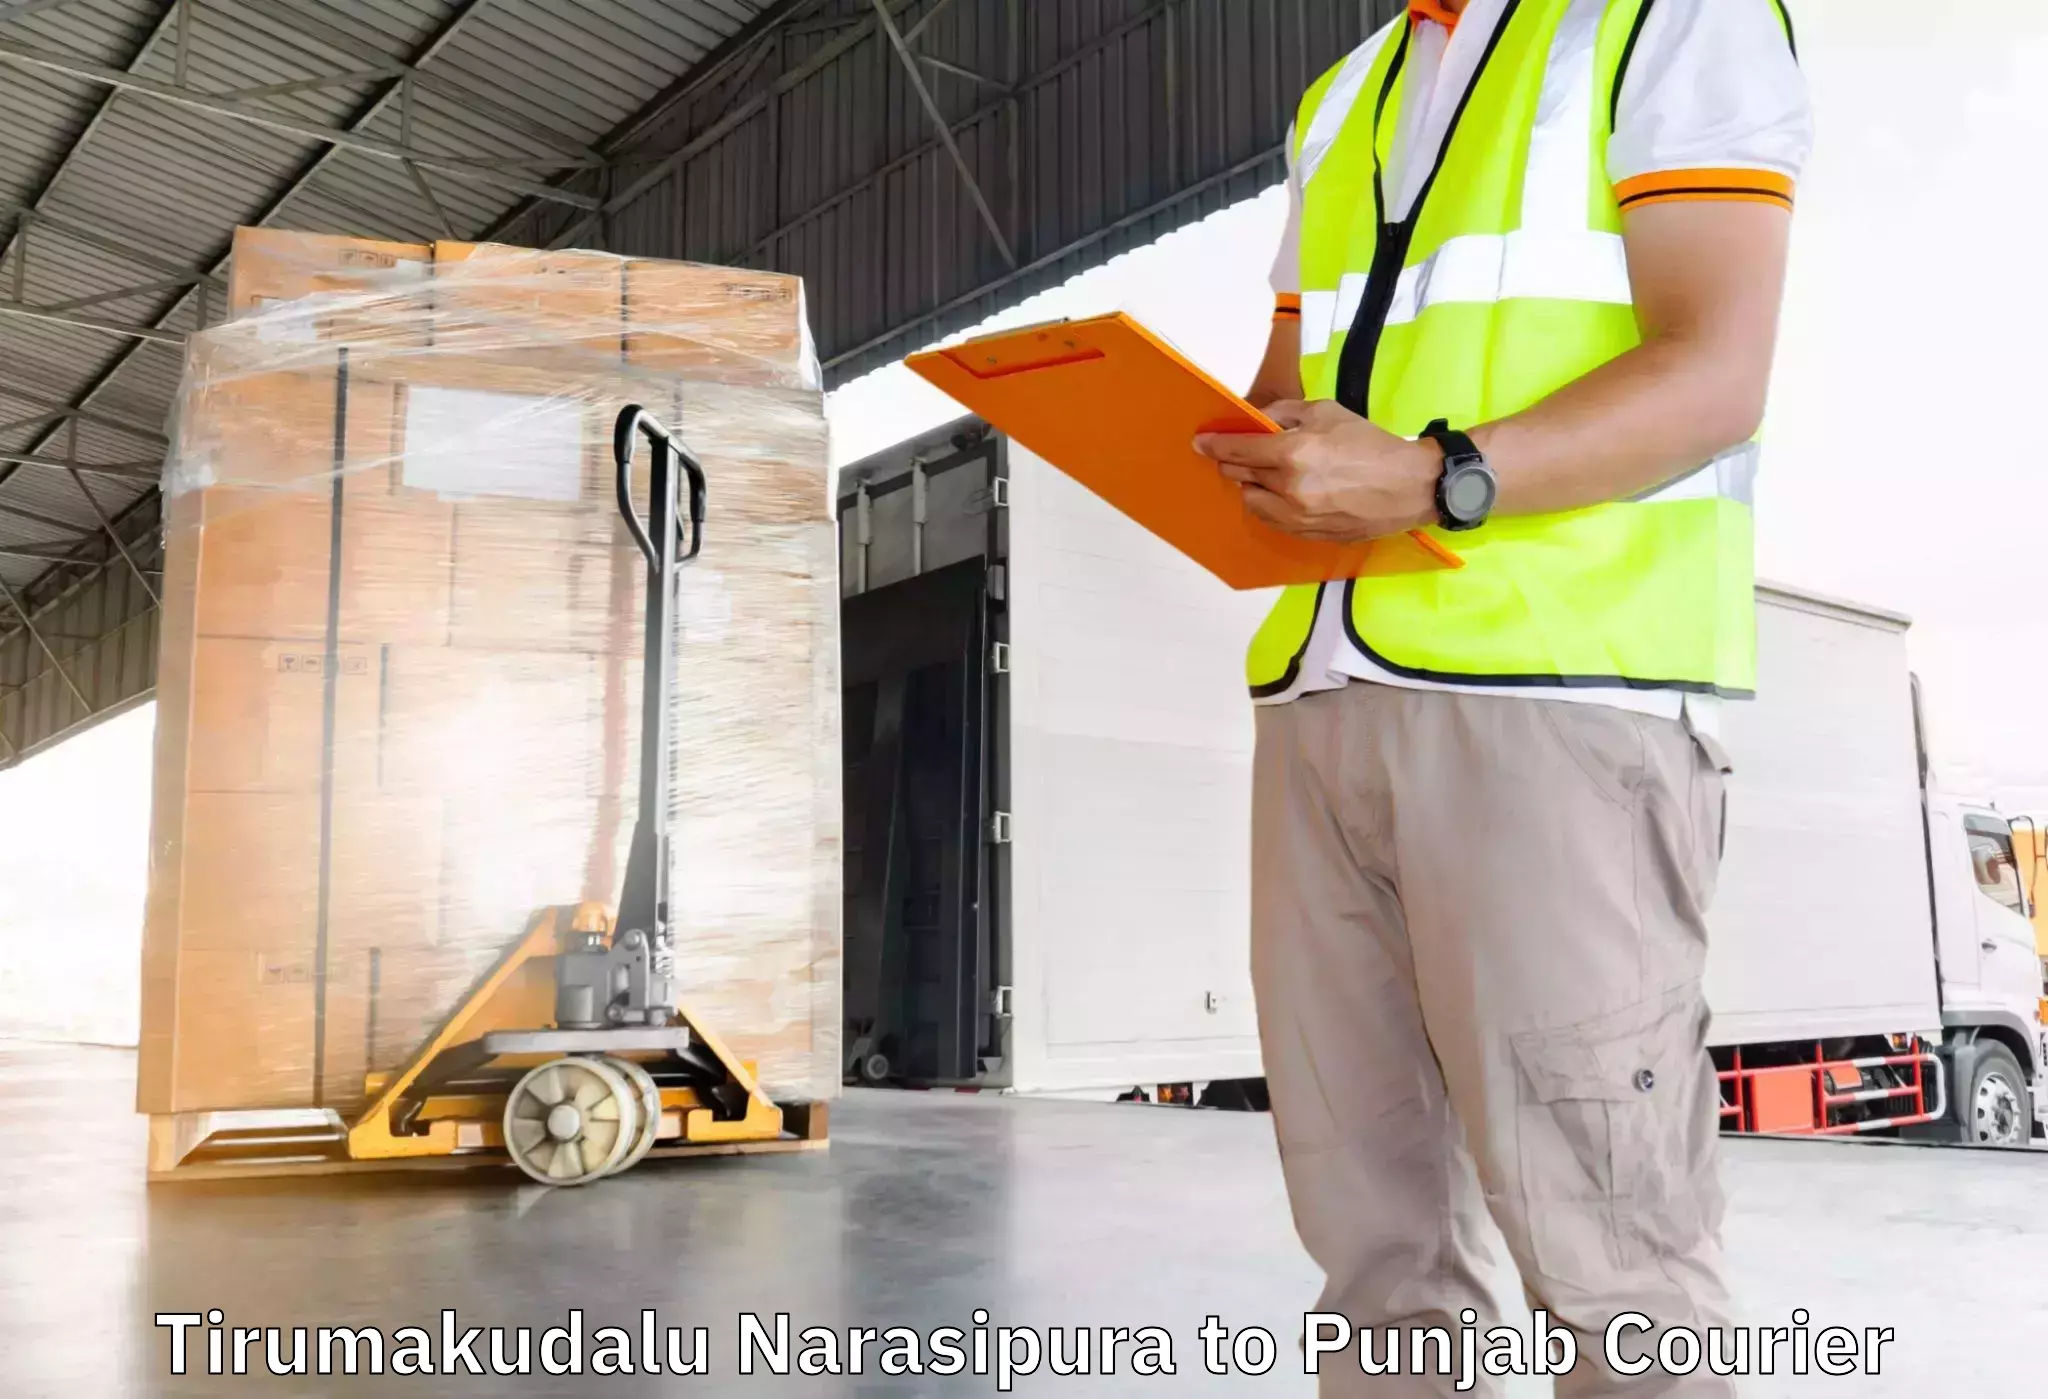 Reliable furniture transport Tirumakudalu Narasipura to Punjab